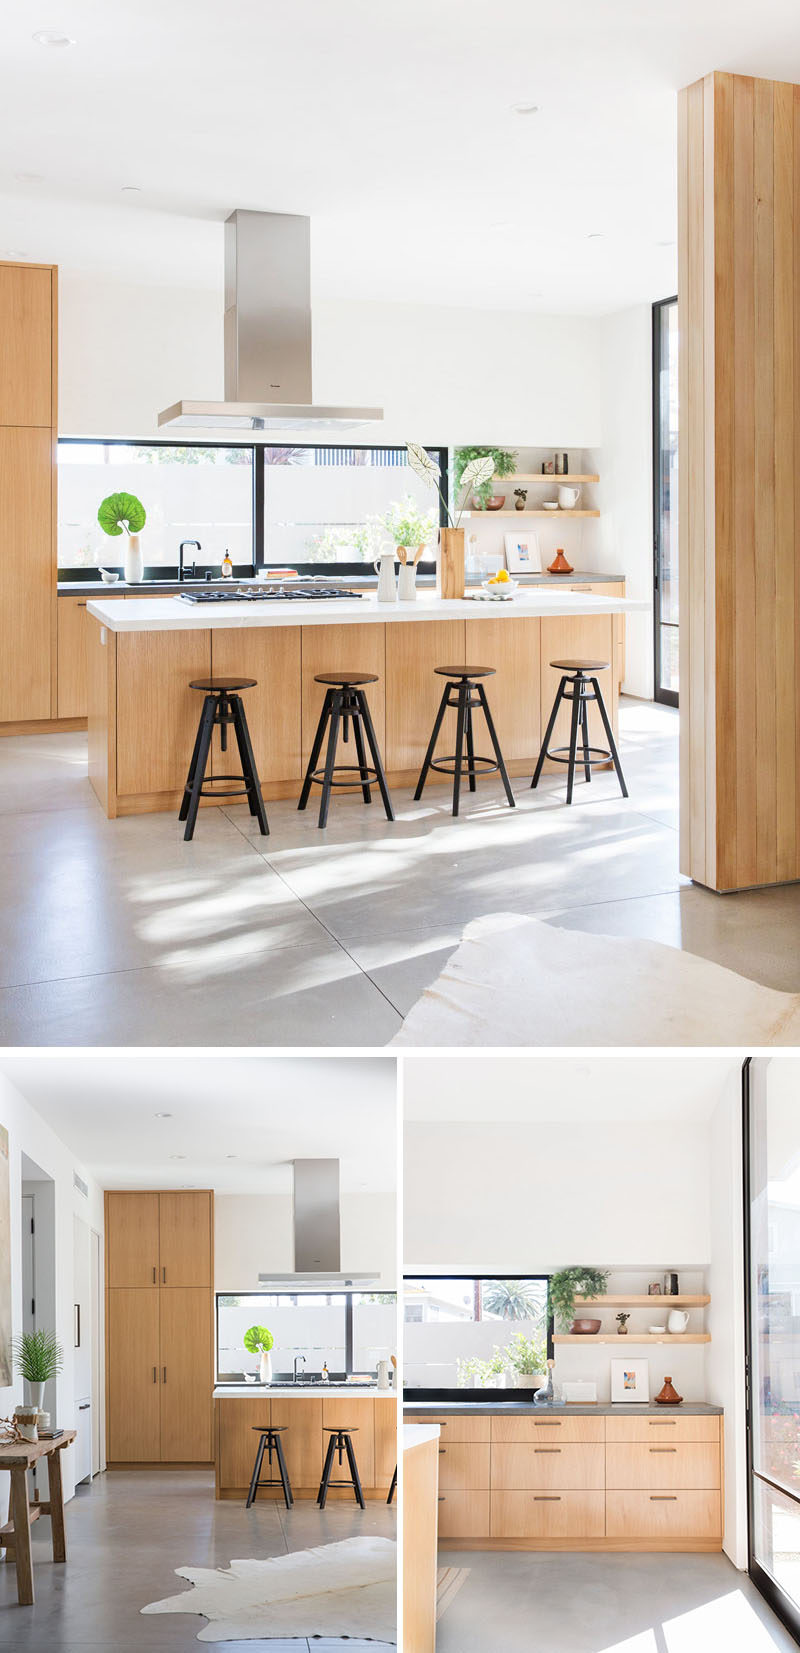  В этой кухне светлые дубовые шкафы сочетаются с белыми оштукатуренными стенами и столешницами, чтобы создать современный вид. #ModernKitchen #KitchenDesign 